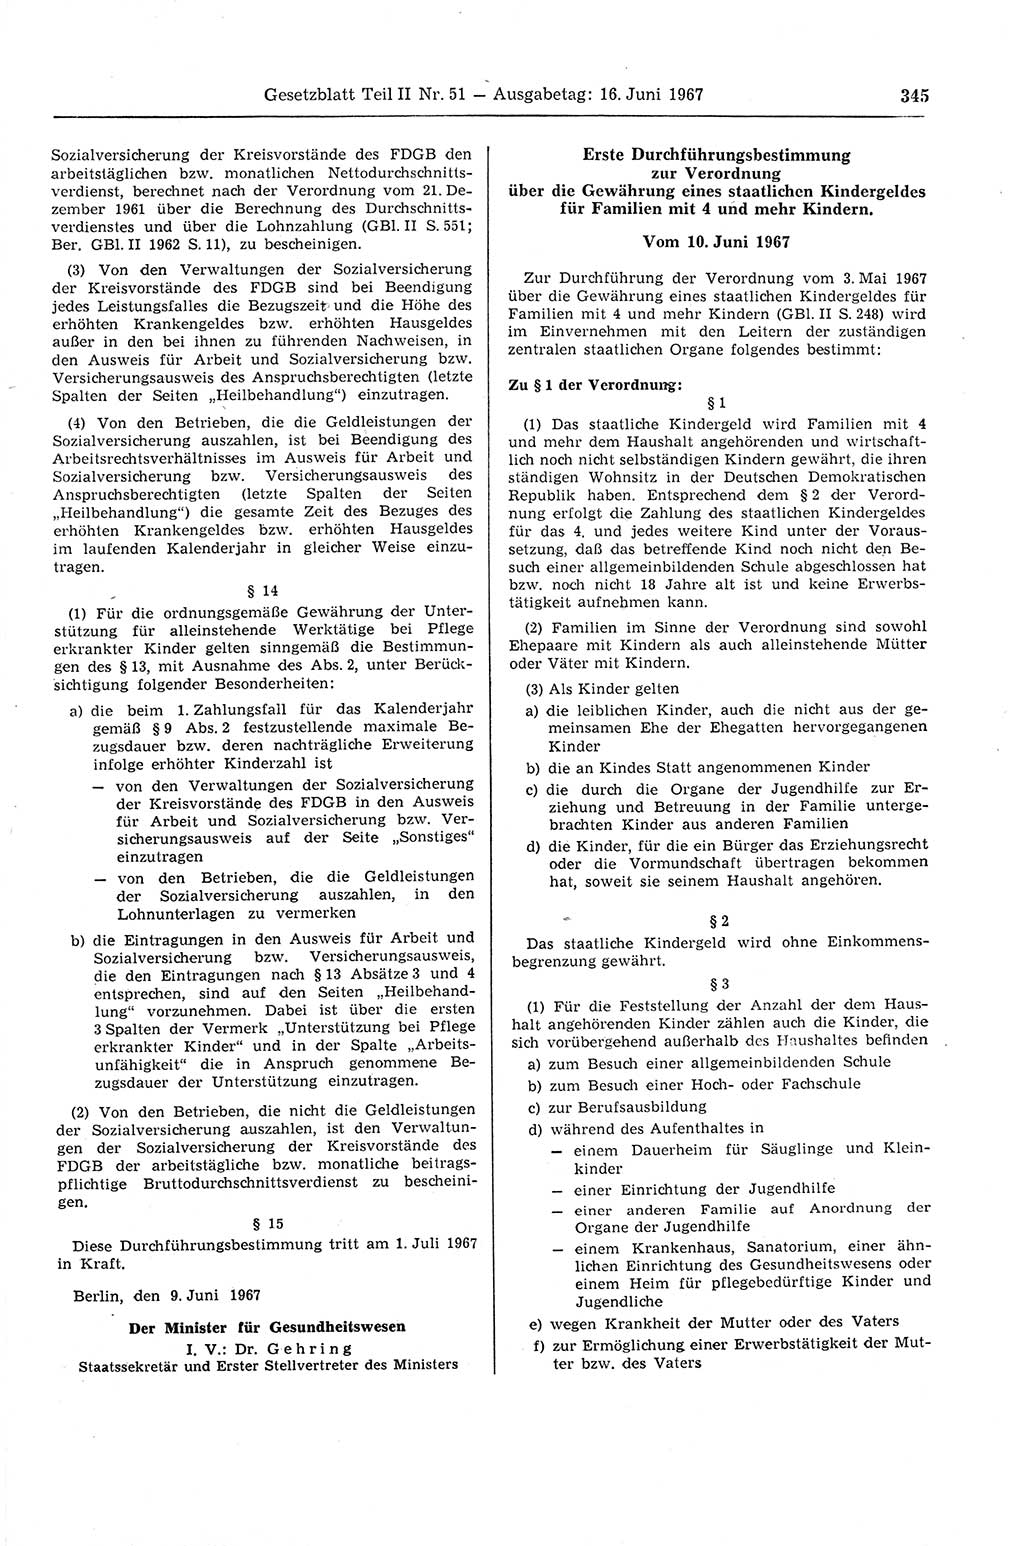 Gesetzblatt (GBl.) der Deutschen Demokratischen Republik (DDR) Teil ⅠⅠ 1967, Seite 345 (GBl. DDR ⅠⅠ 1967, S. 345)